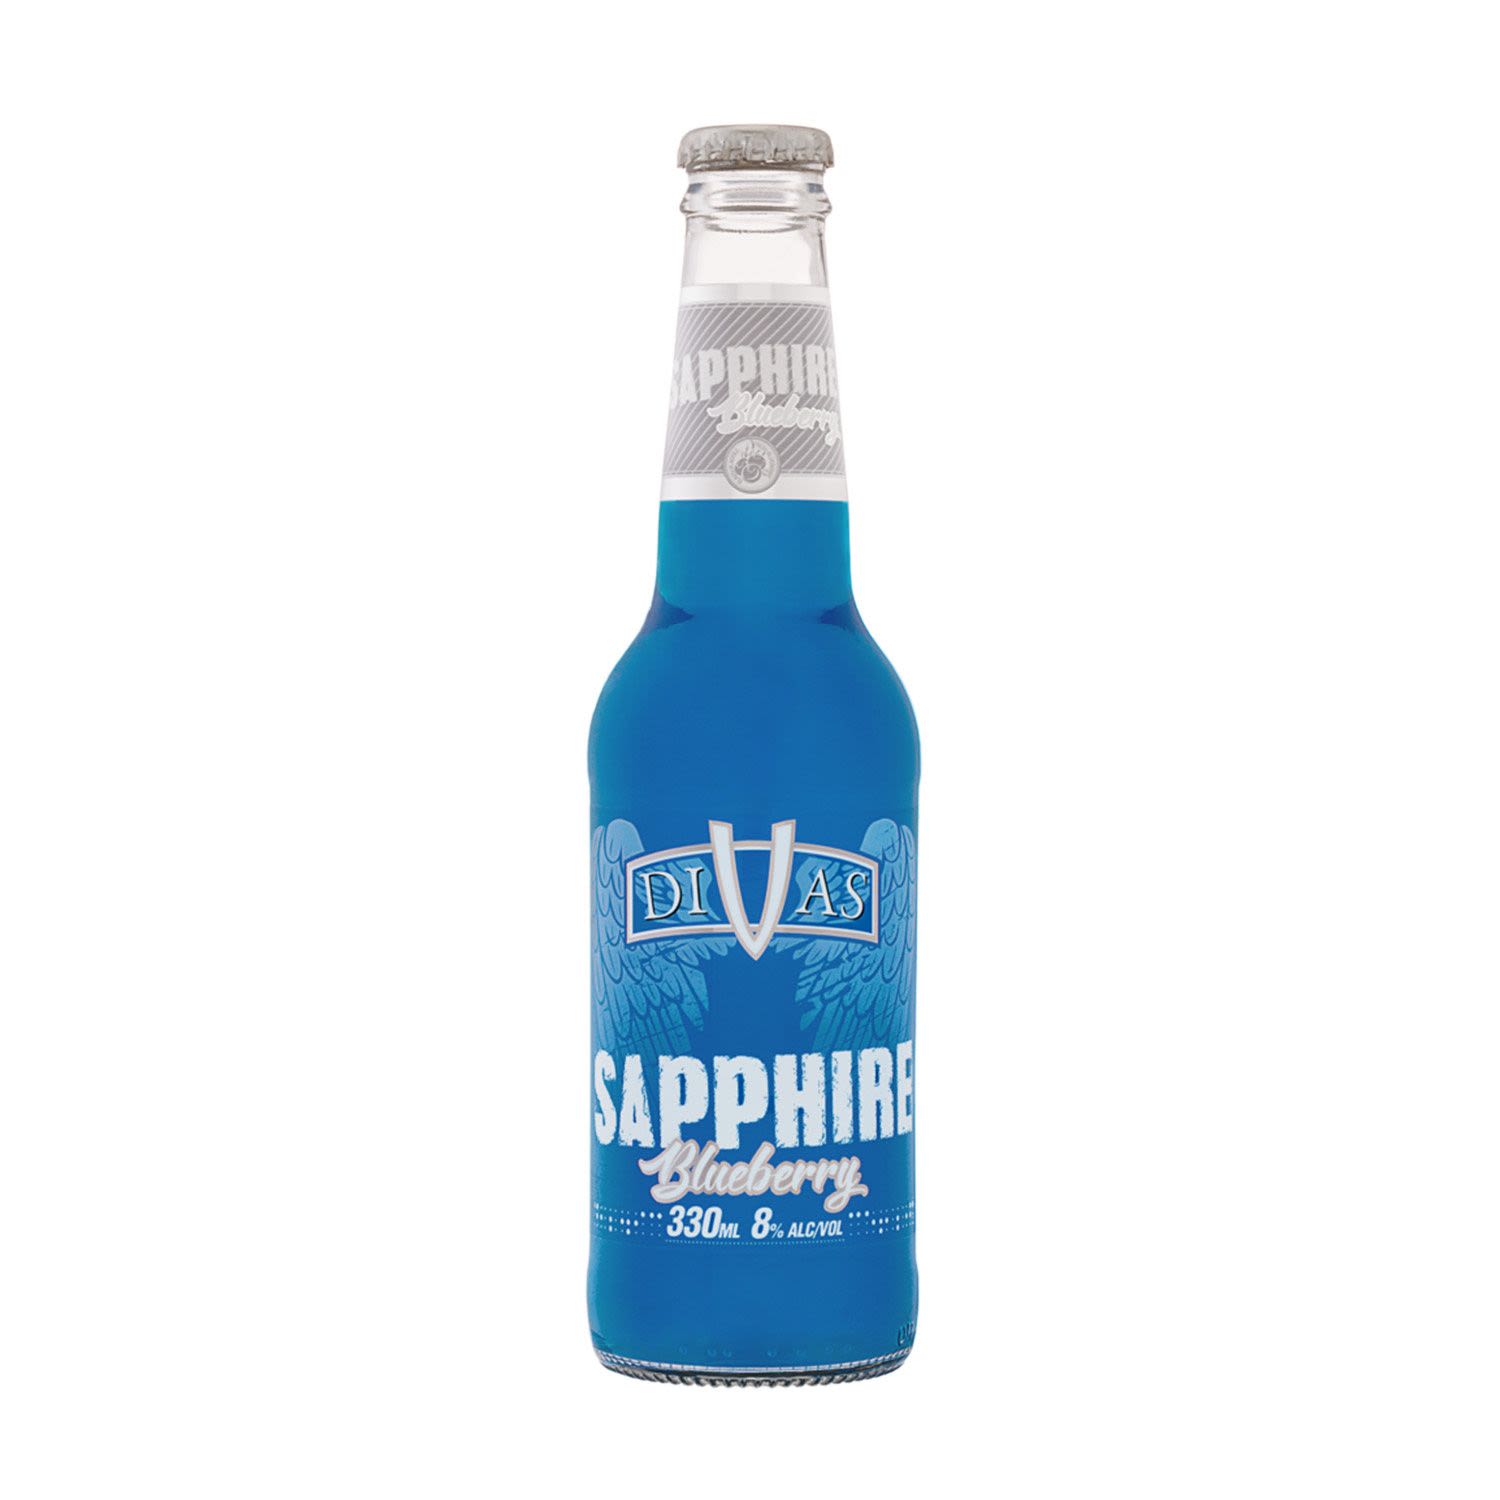 Divas Sapphire Blueberry Bottle 330mL 4 Pack